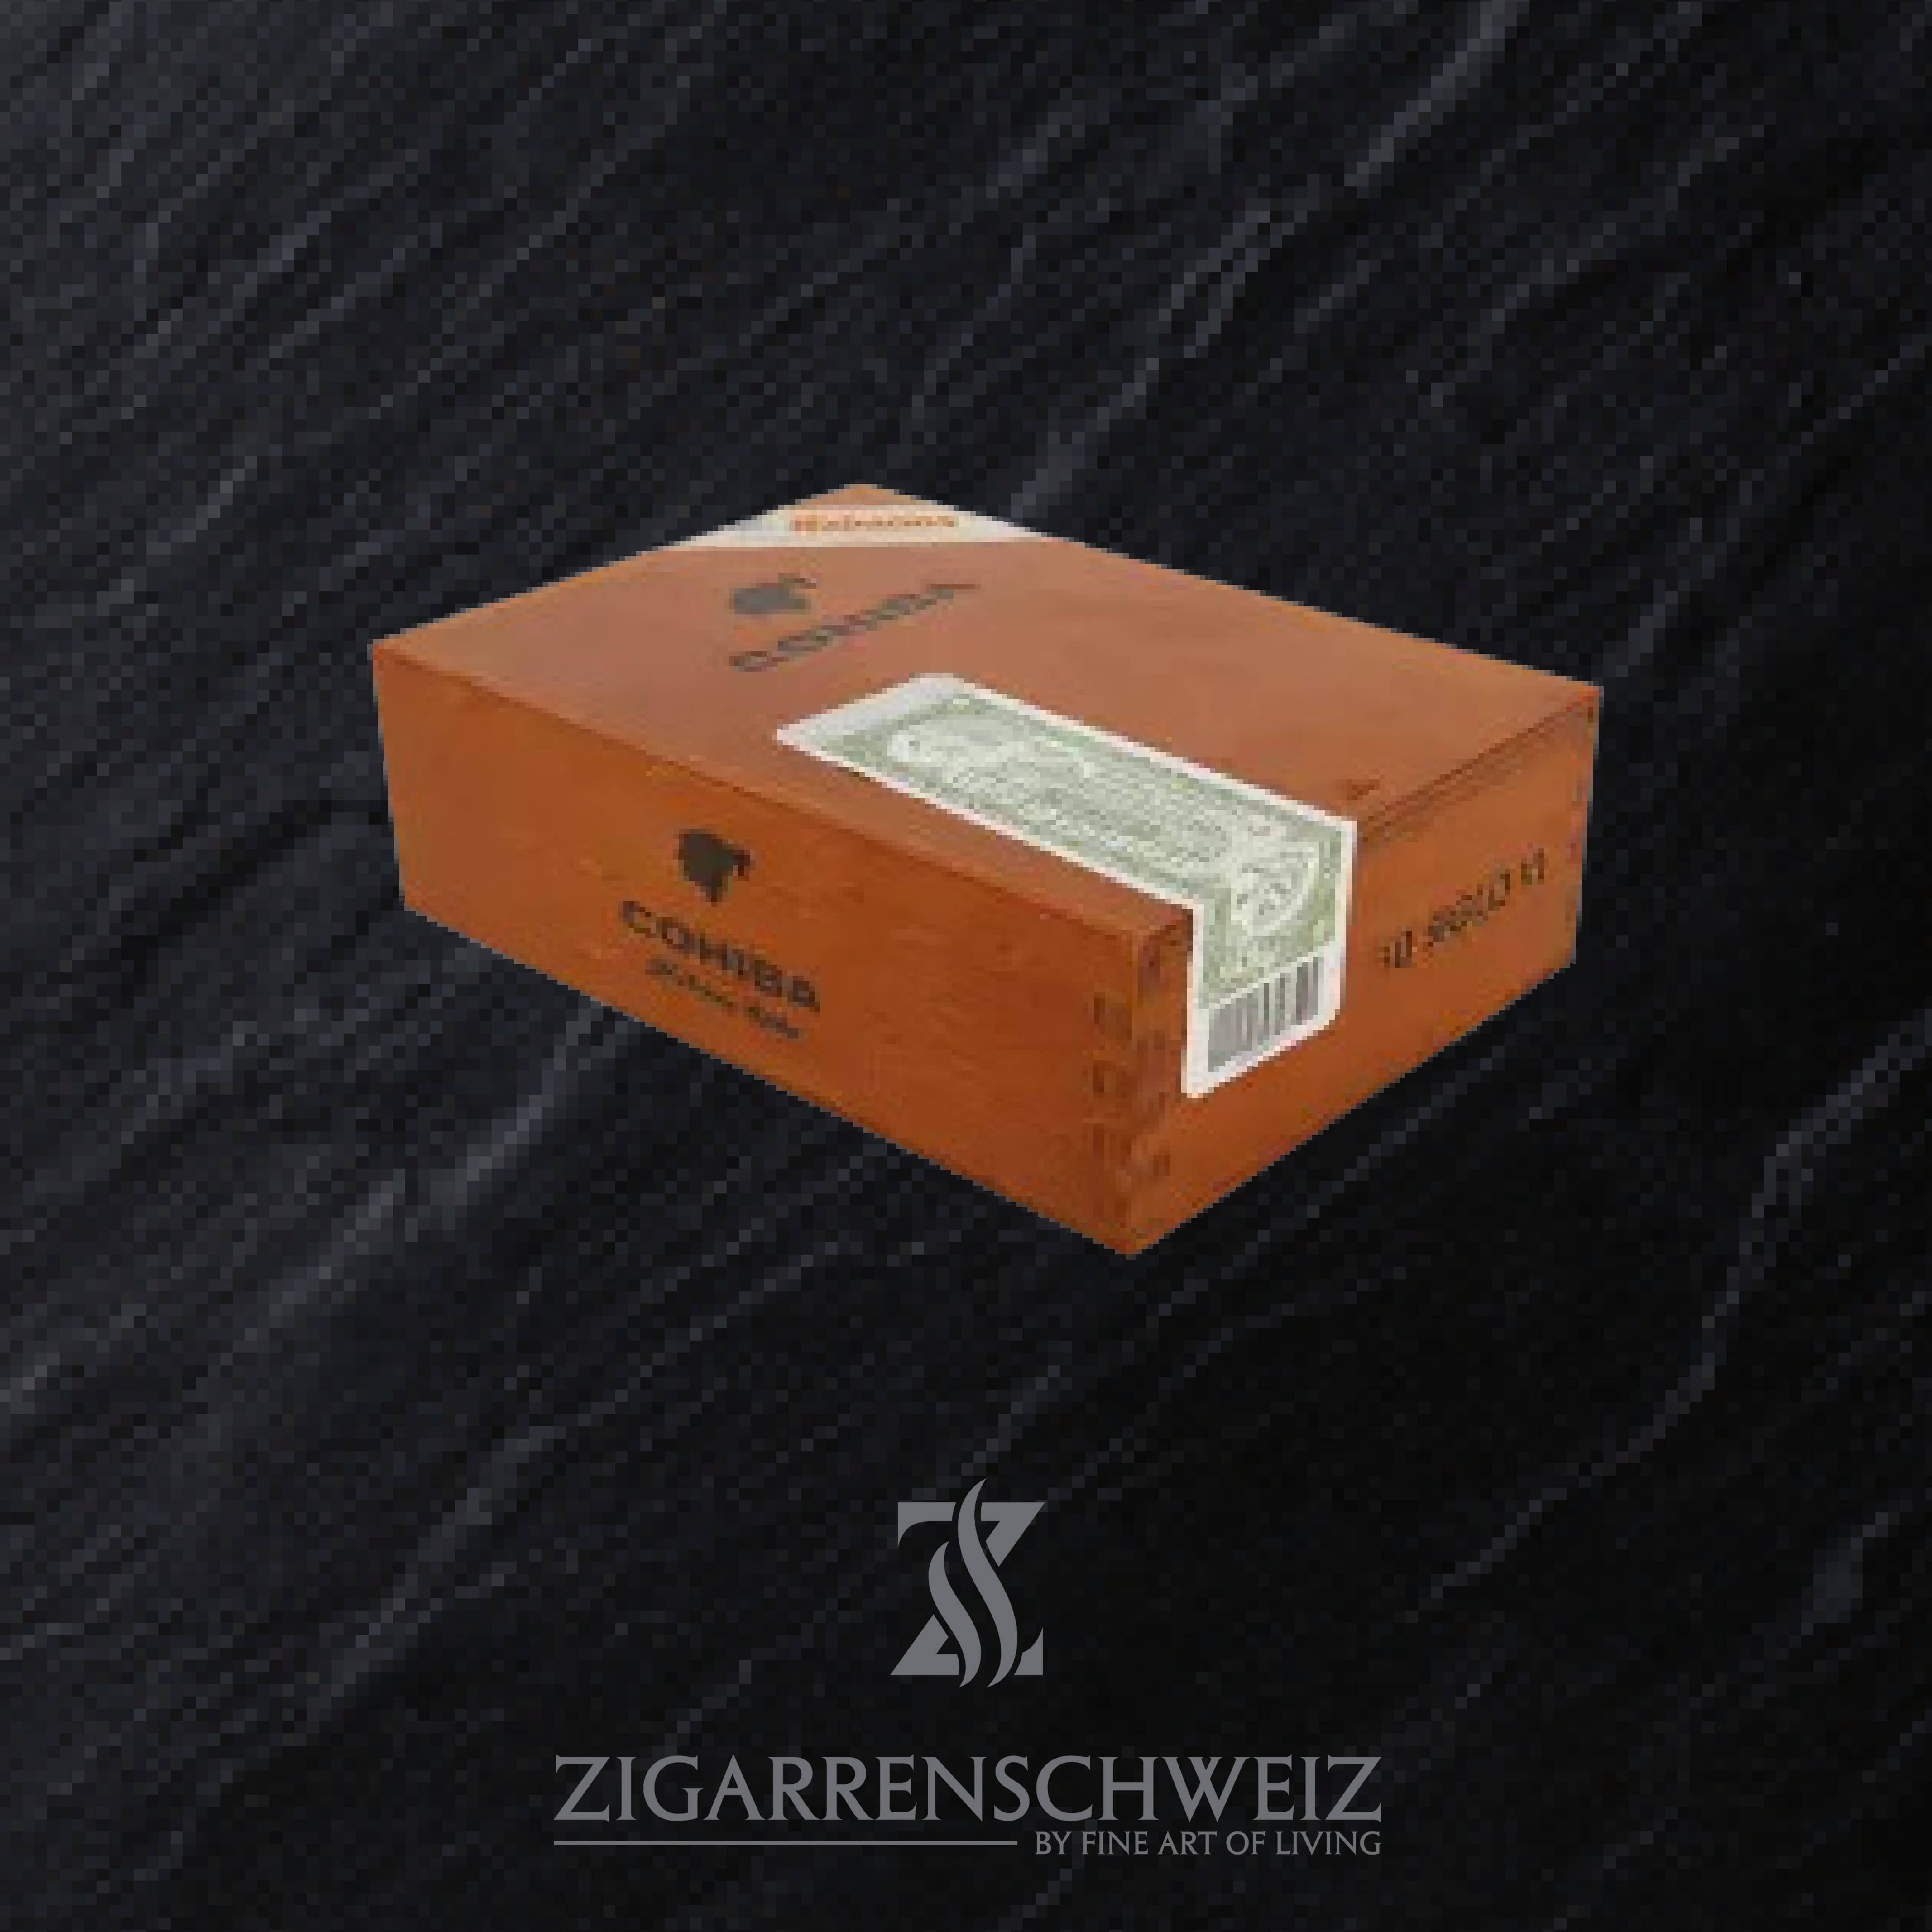 Cohiba Siglo IV (6) Zigarren aus der Linea 1492 von Cohiba - 10er Kiste geschlossen